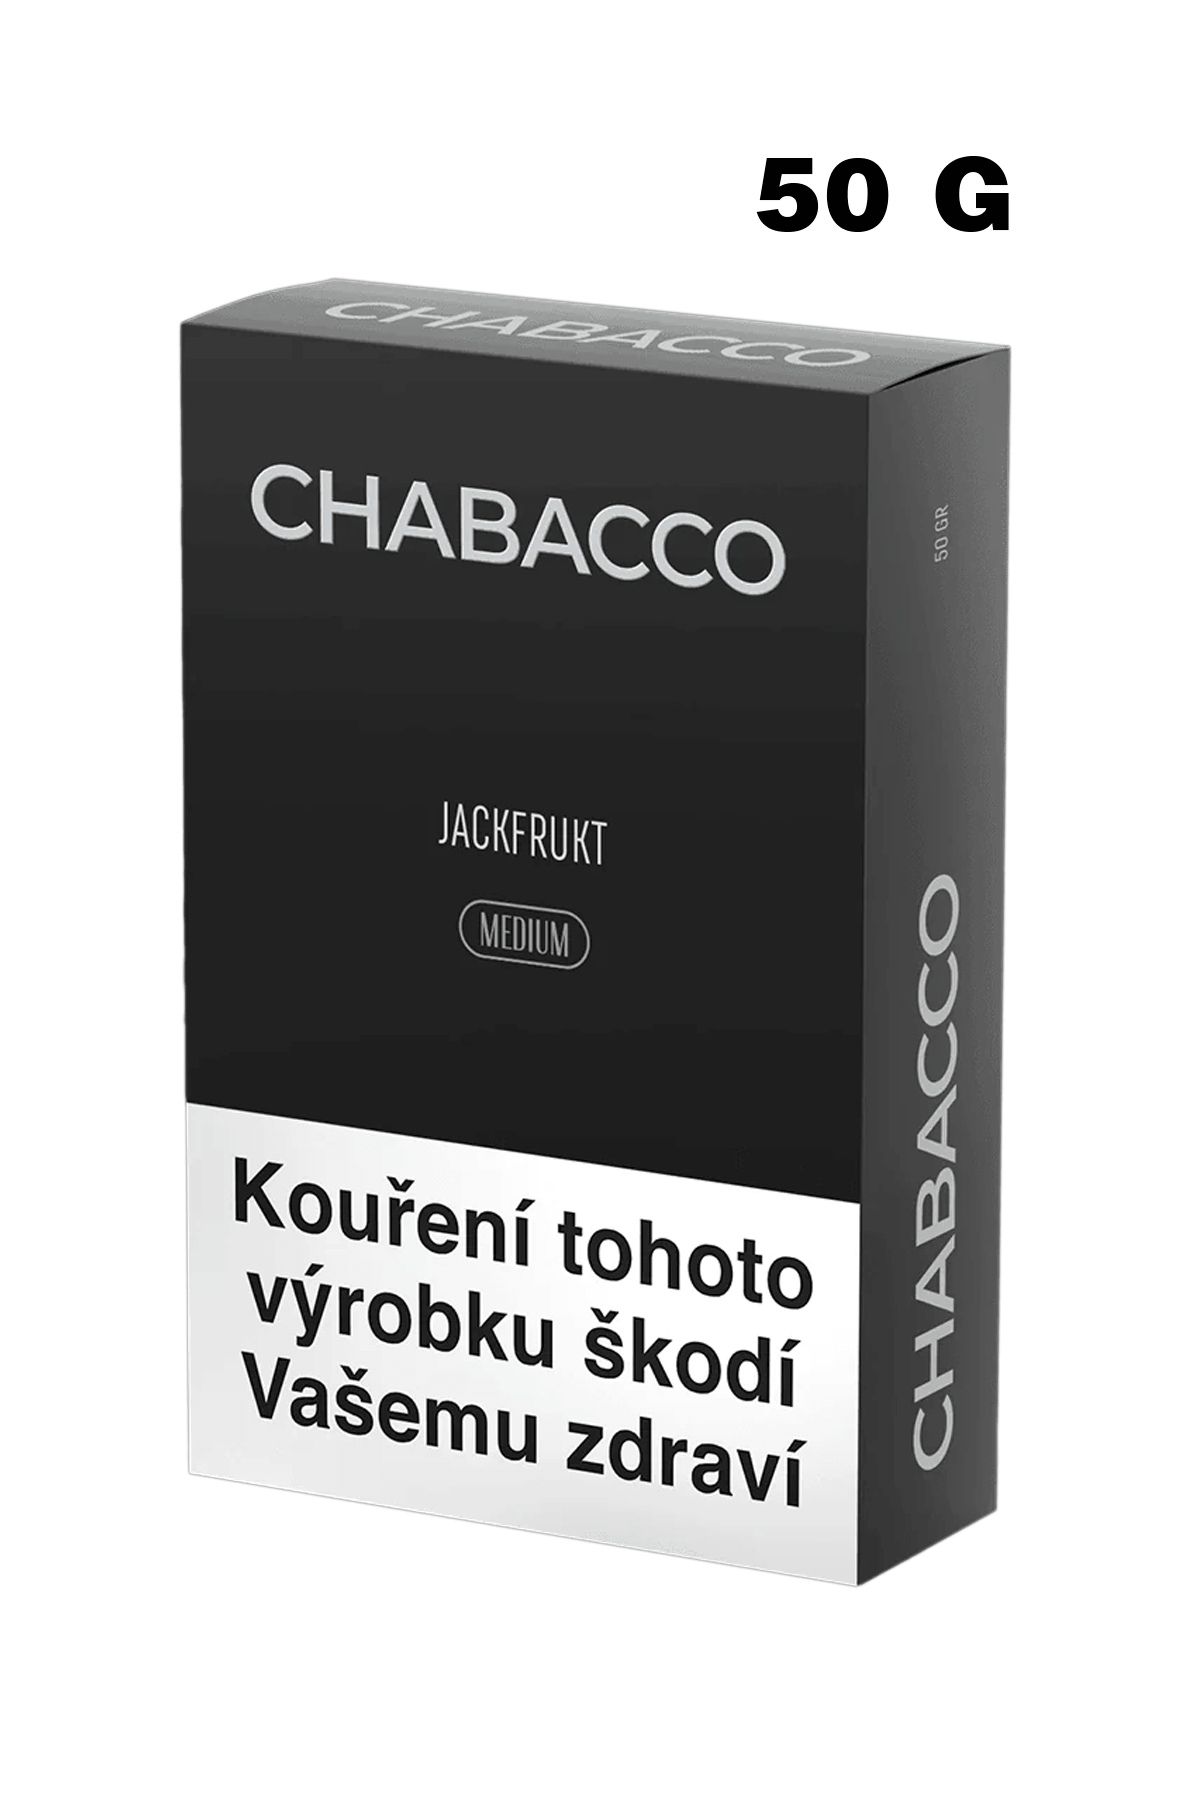 Tabák - Chabacco Medium 50g - Jackfrukt